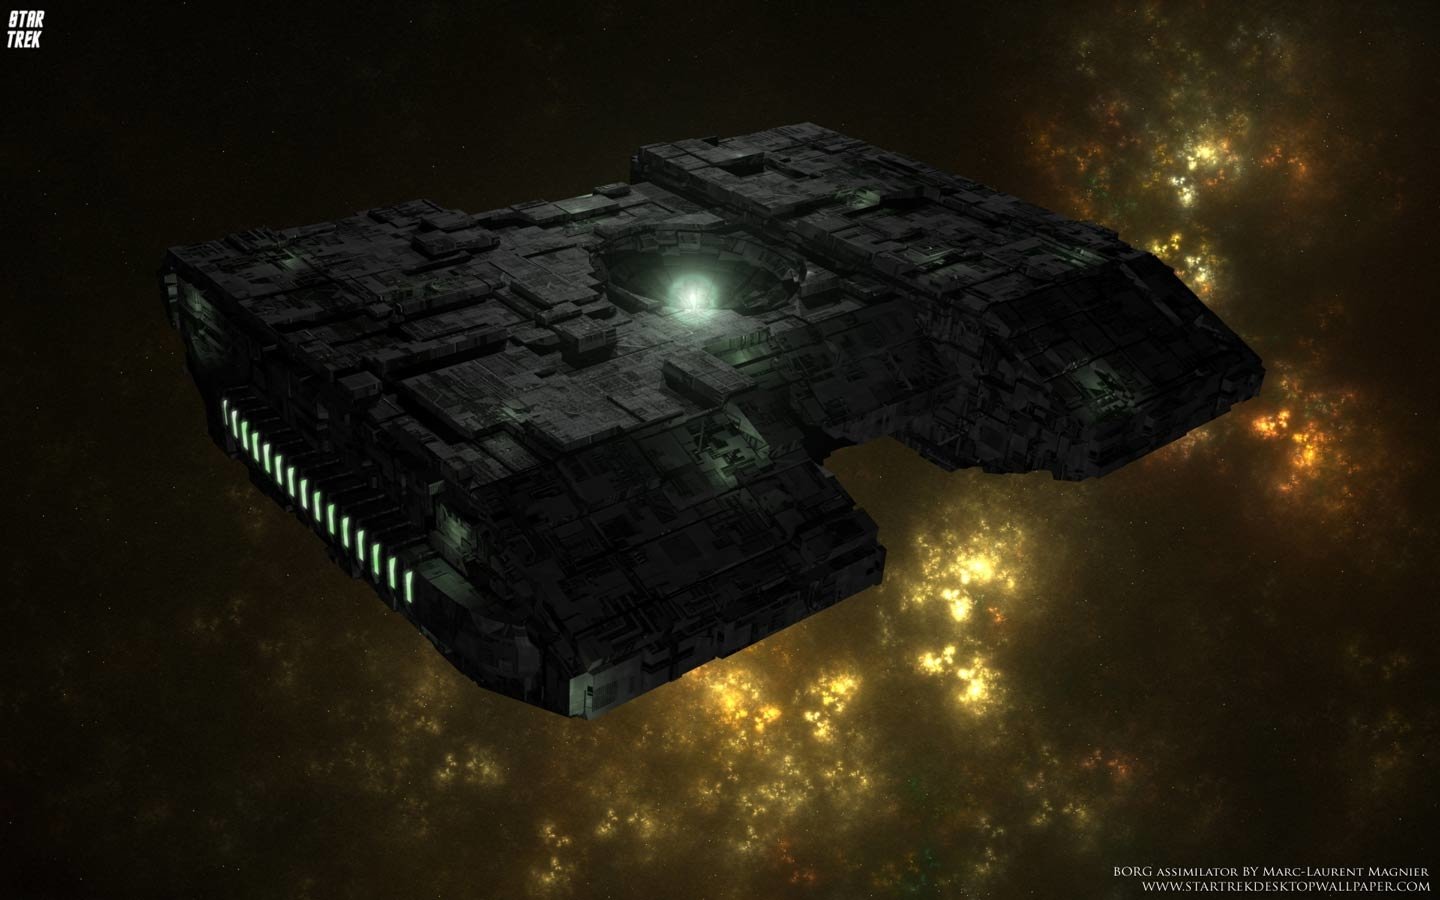 Star Trek Borg Assimilator Wallpaper And Background Image